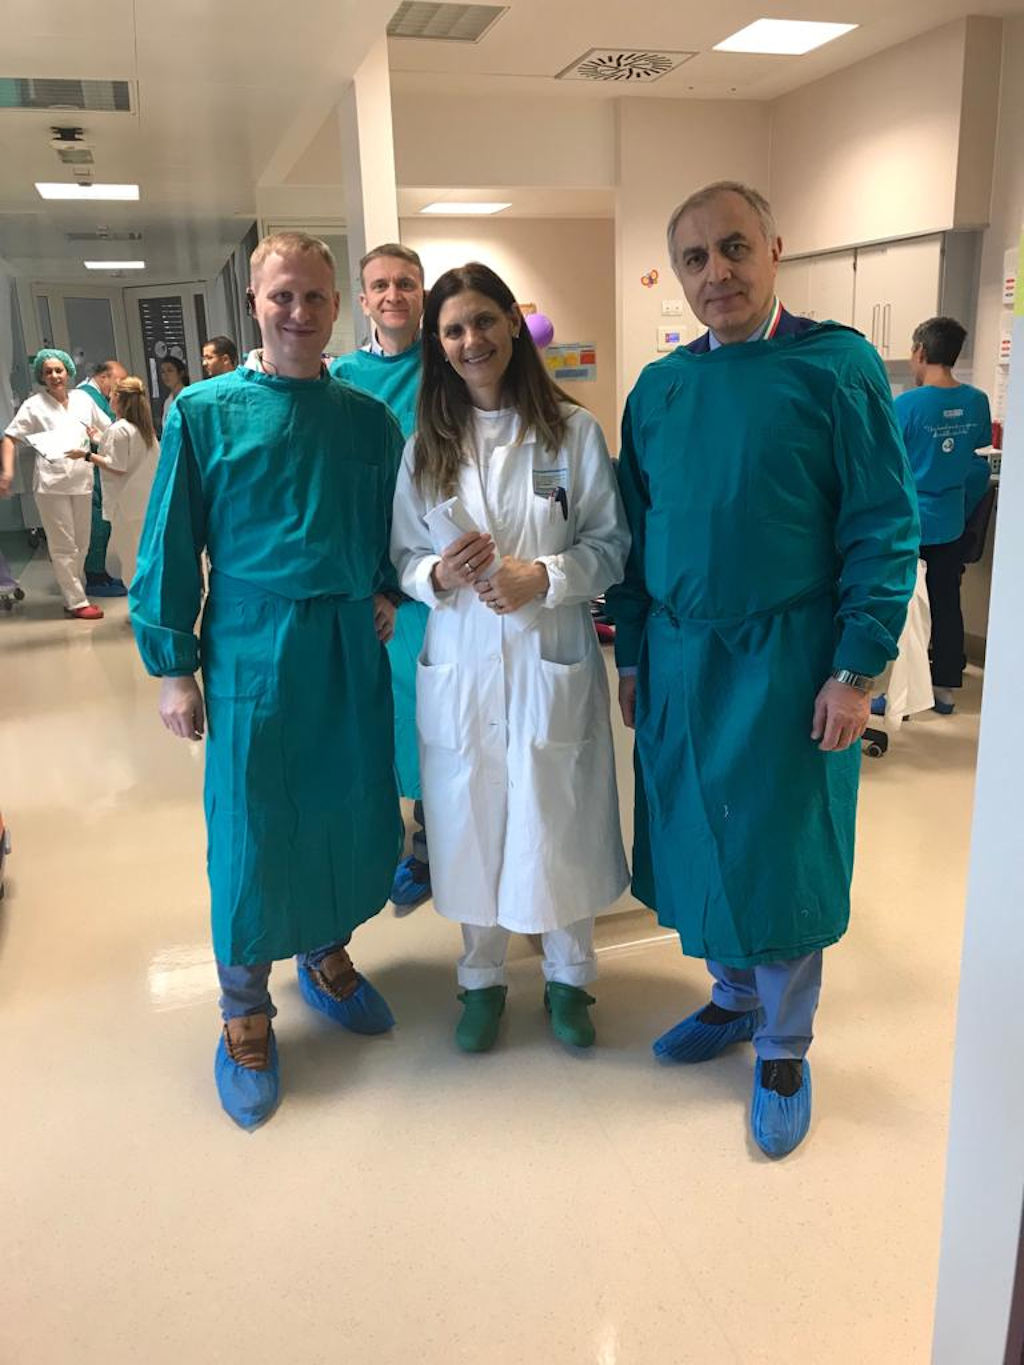 Сегодня завершился визит сотрудников ДЗМ в Пармский госпиталь, который является одним из крупнейших и старейших в Италии